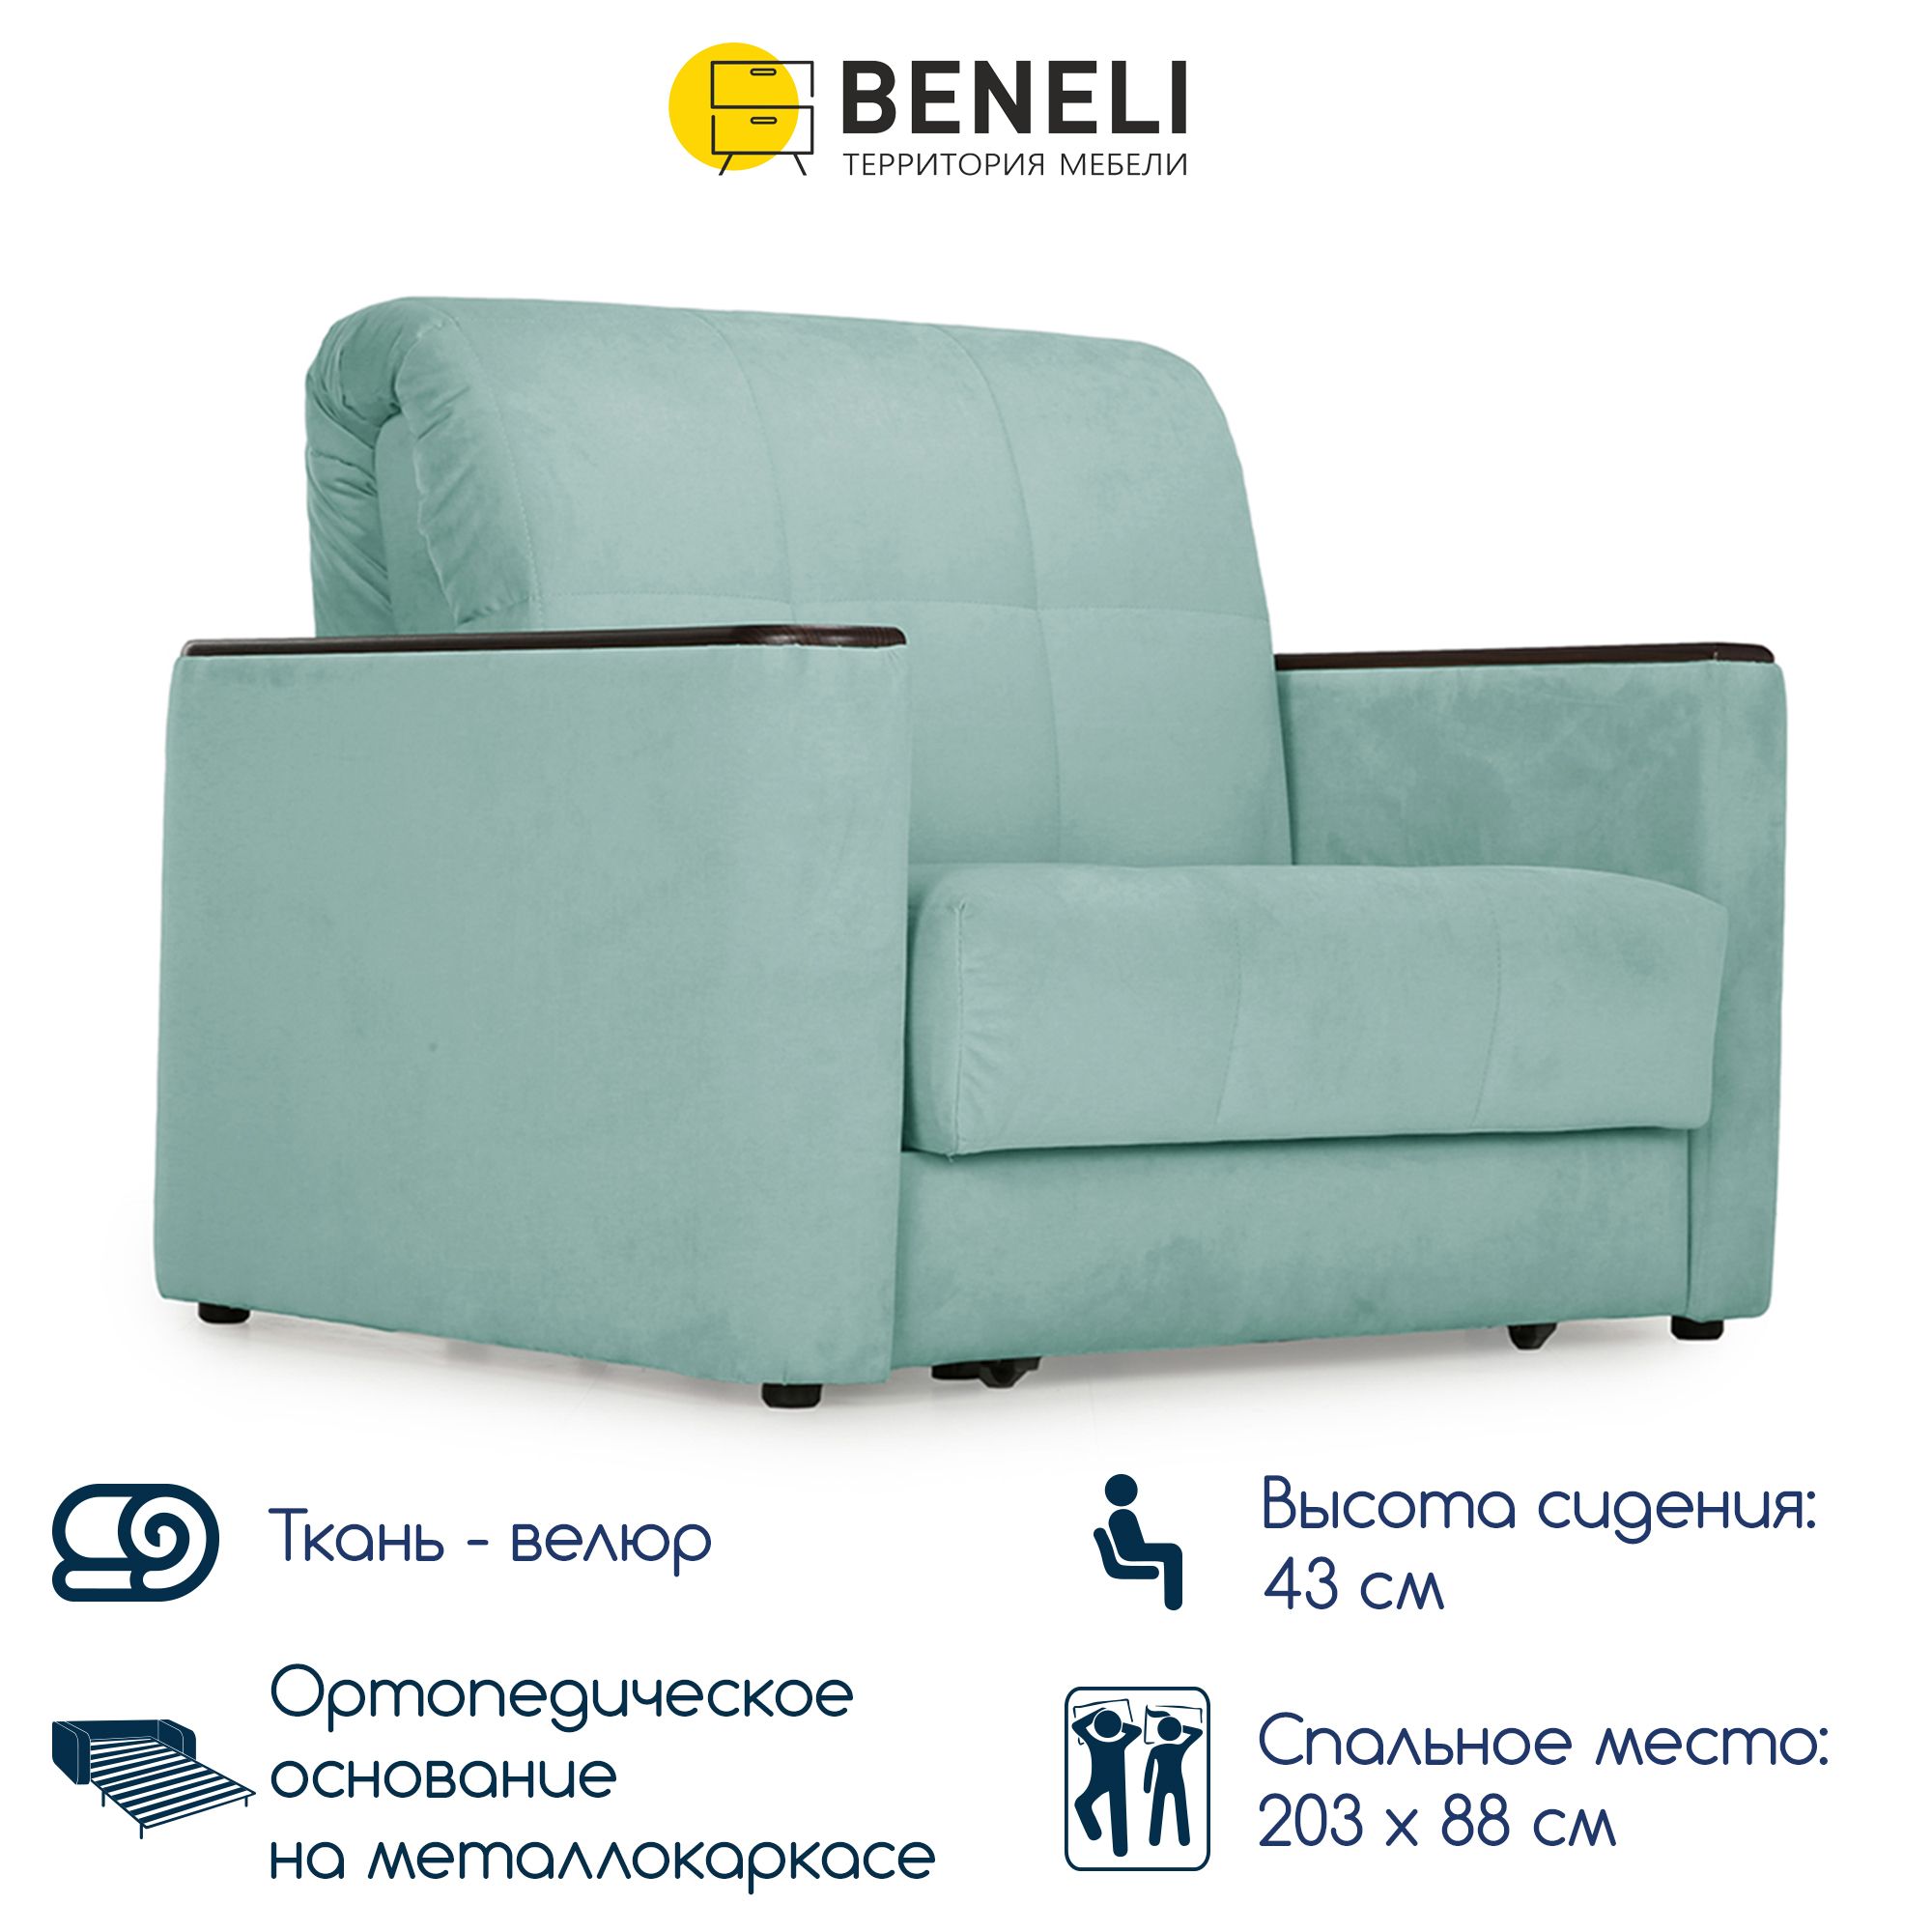 Кресло-кровать раскладное Beneli МЕМФИС, светло-зеленый, 118х103х95 см, 1 шт.